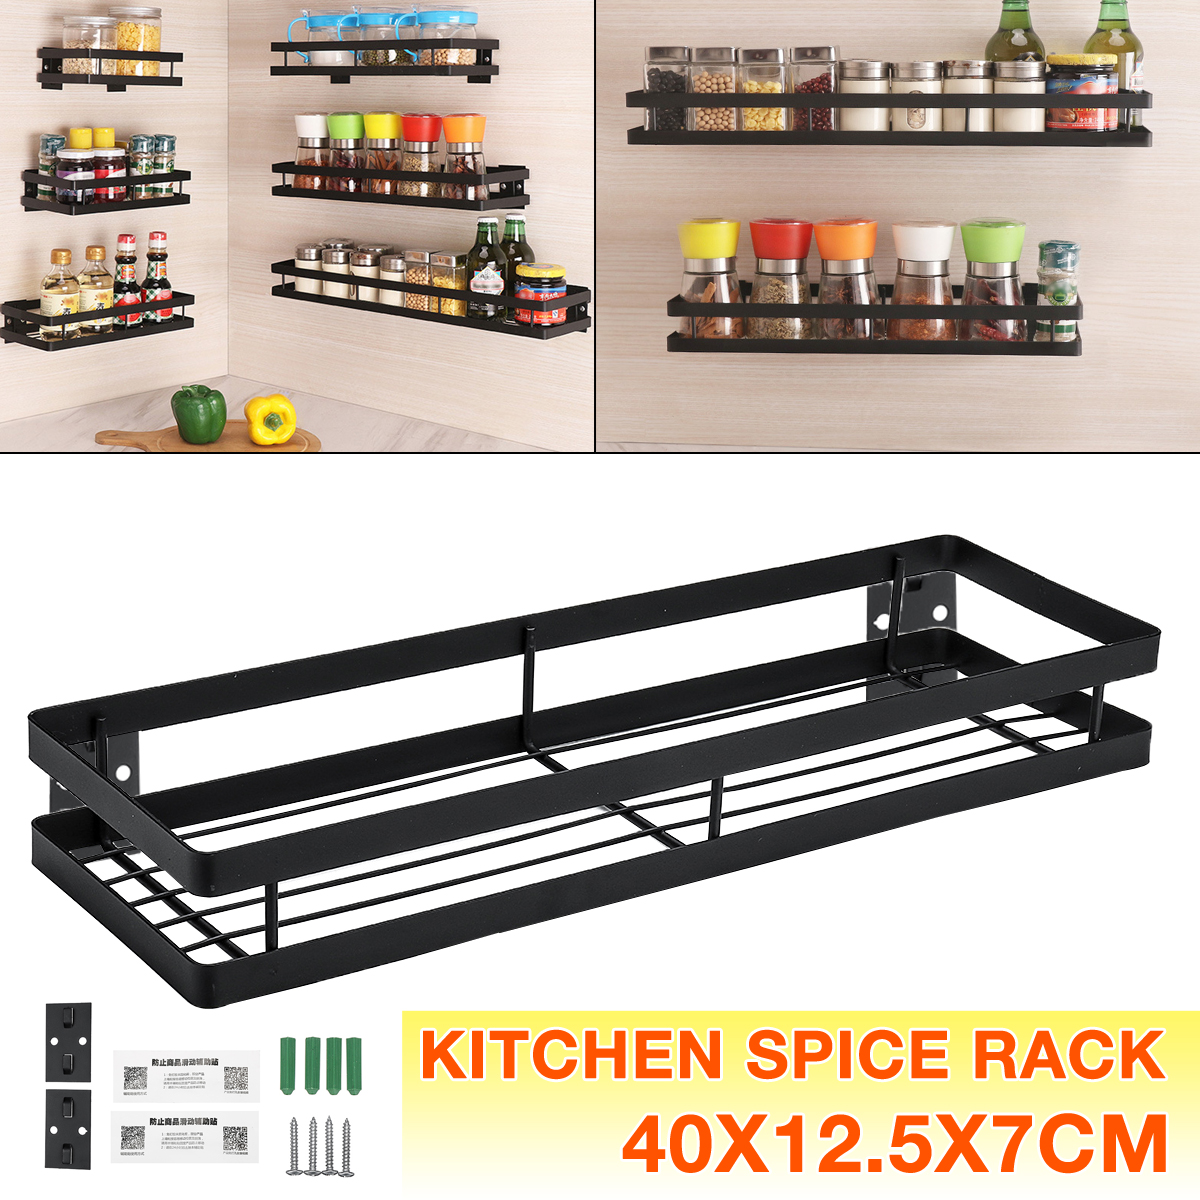 Kitchen-Spice-Rack-Stainless-Steel-Single-Tier-Storage-Shelf-Organizer-Holder-1643286-10